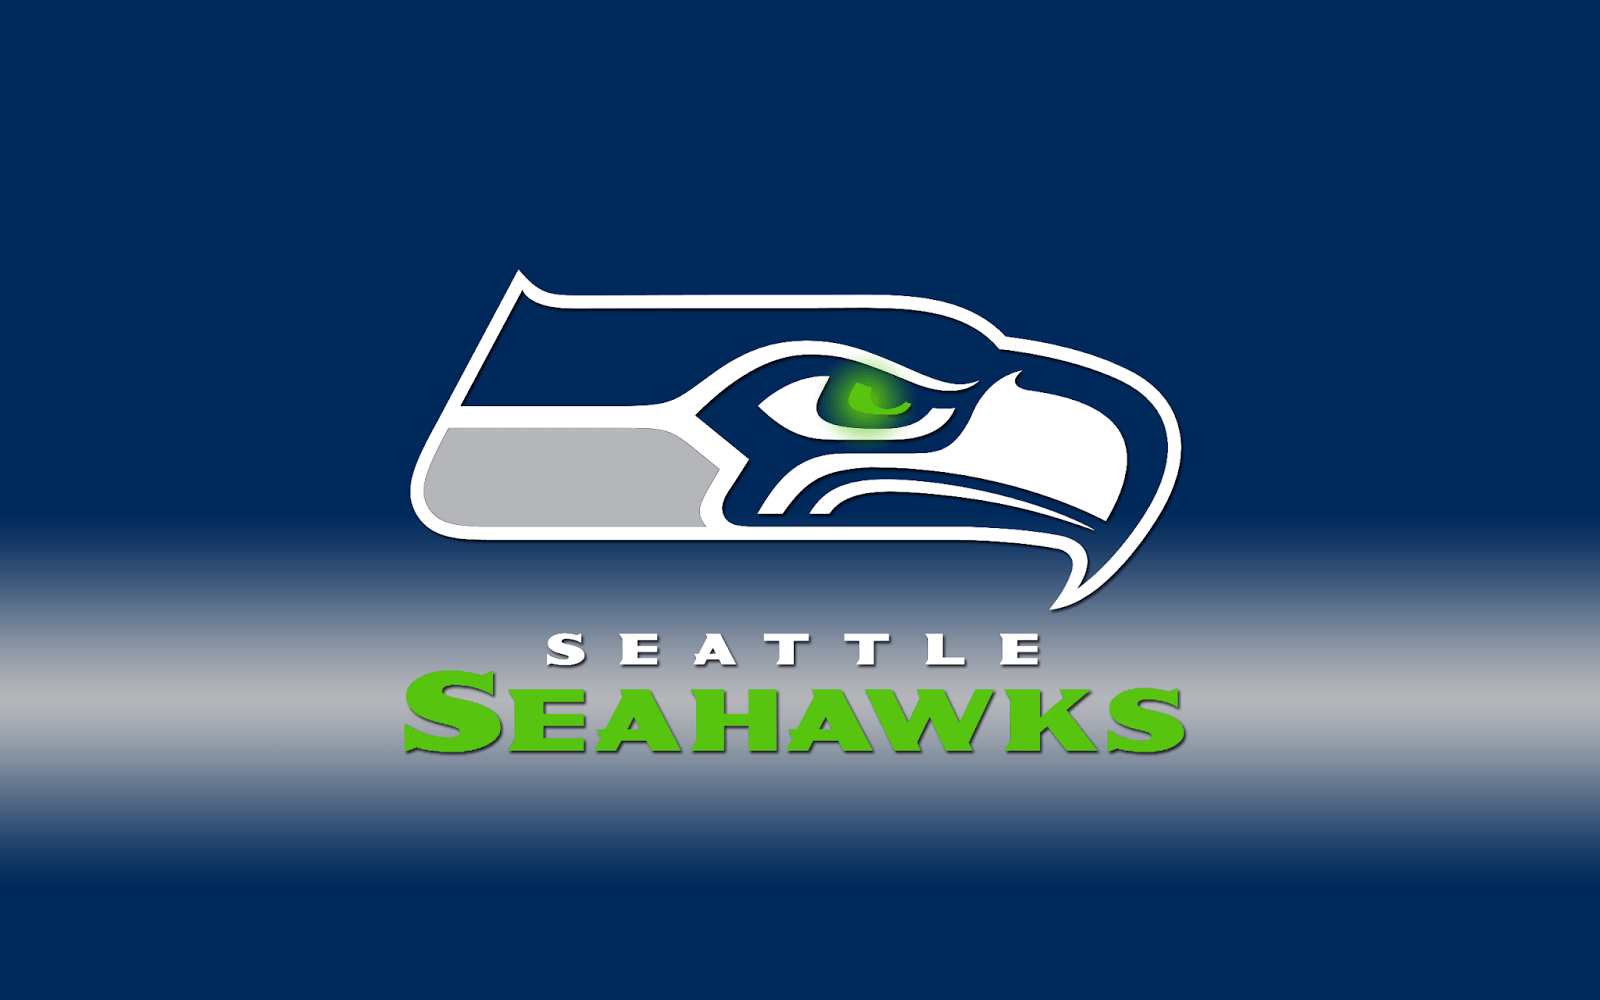 Seattle Seahawks iPhone Wallpaper